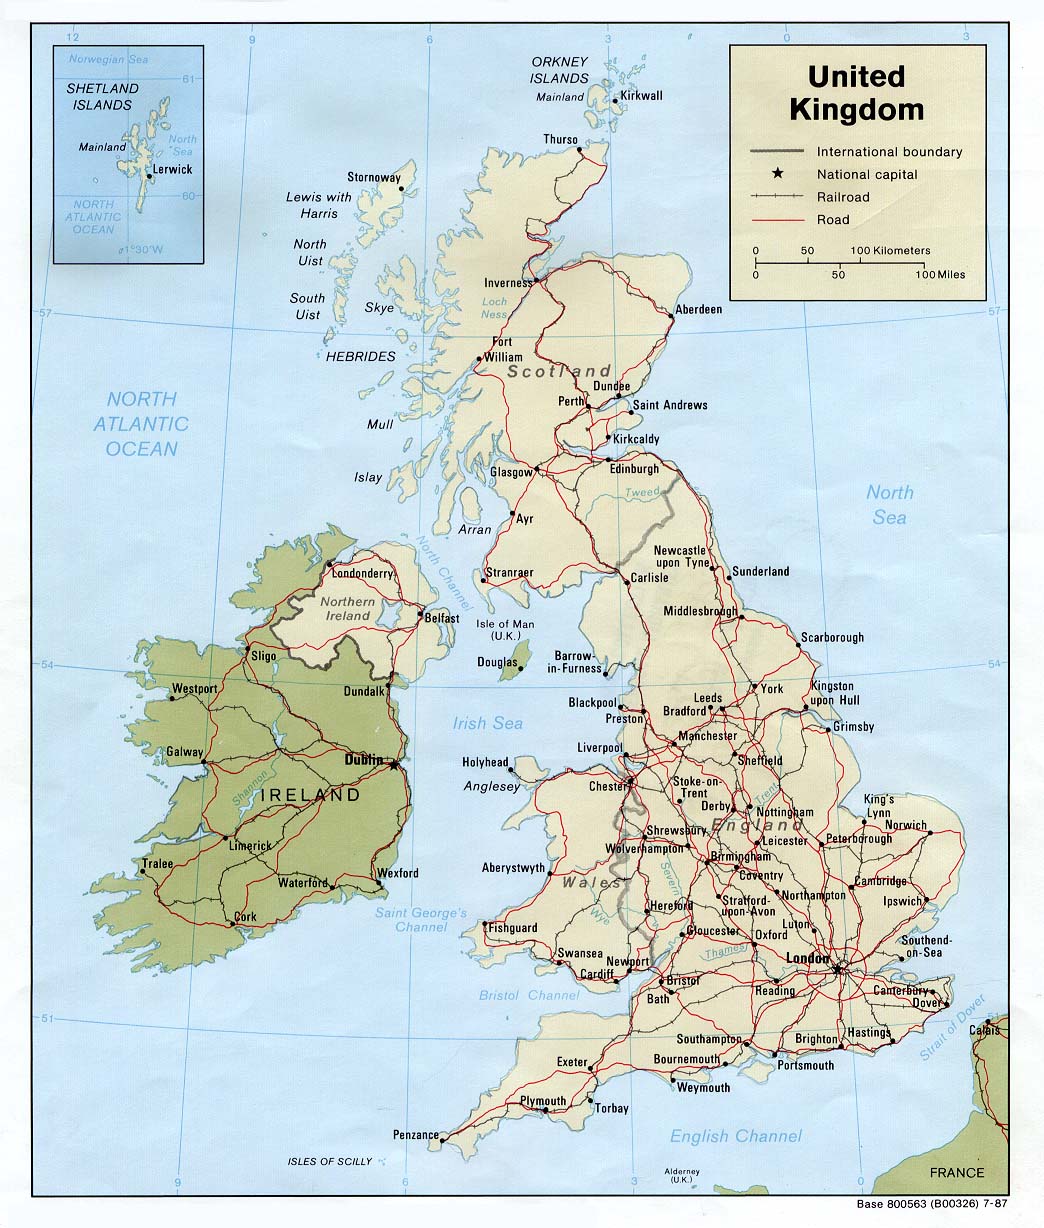 英国常用地图-英国地图,英国铁路图,伦敦地图,伦敦地铁图,爱丁堡地图